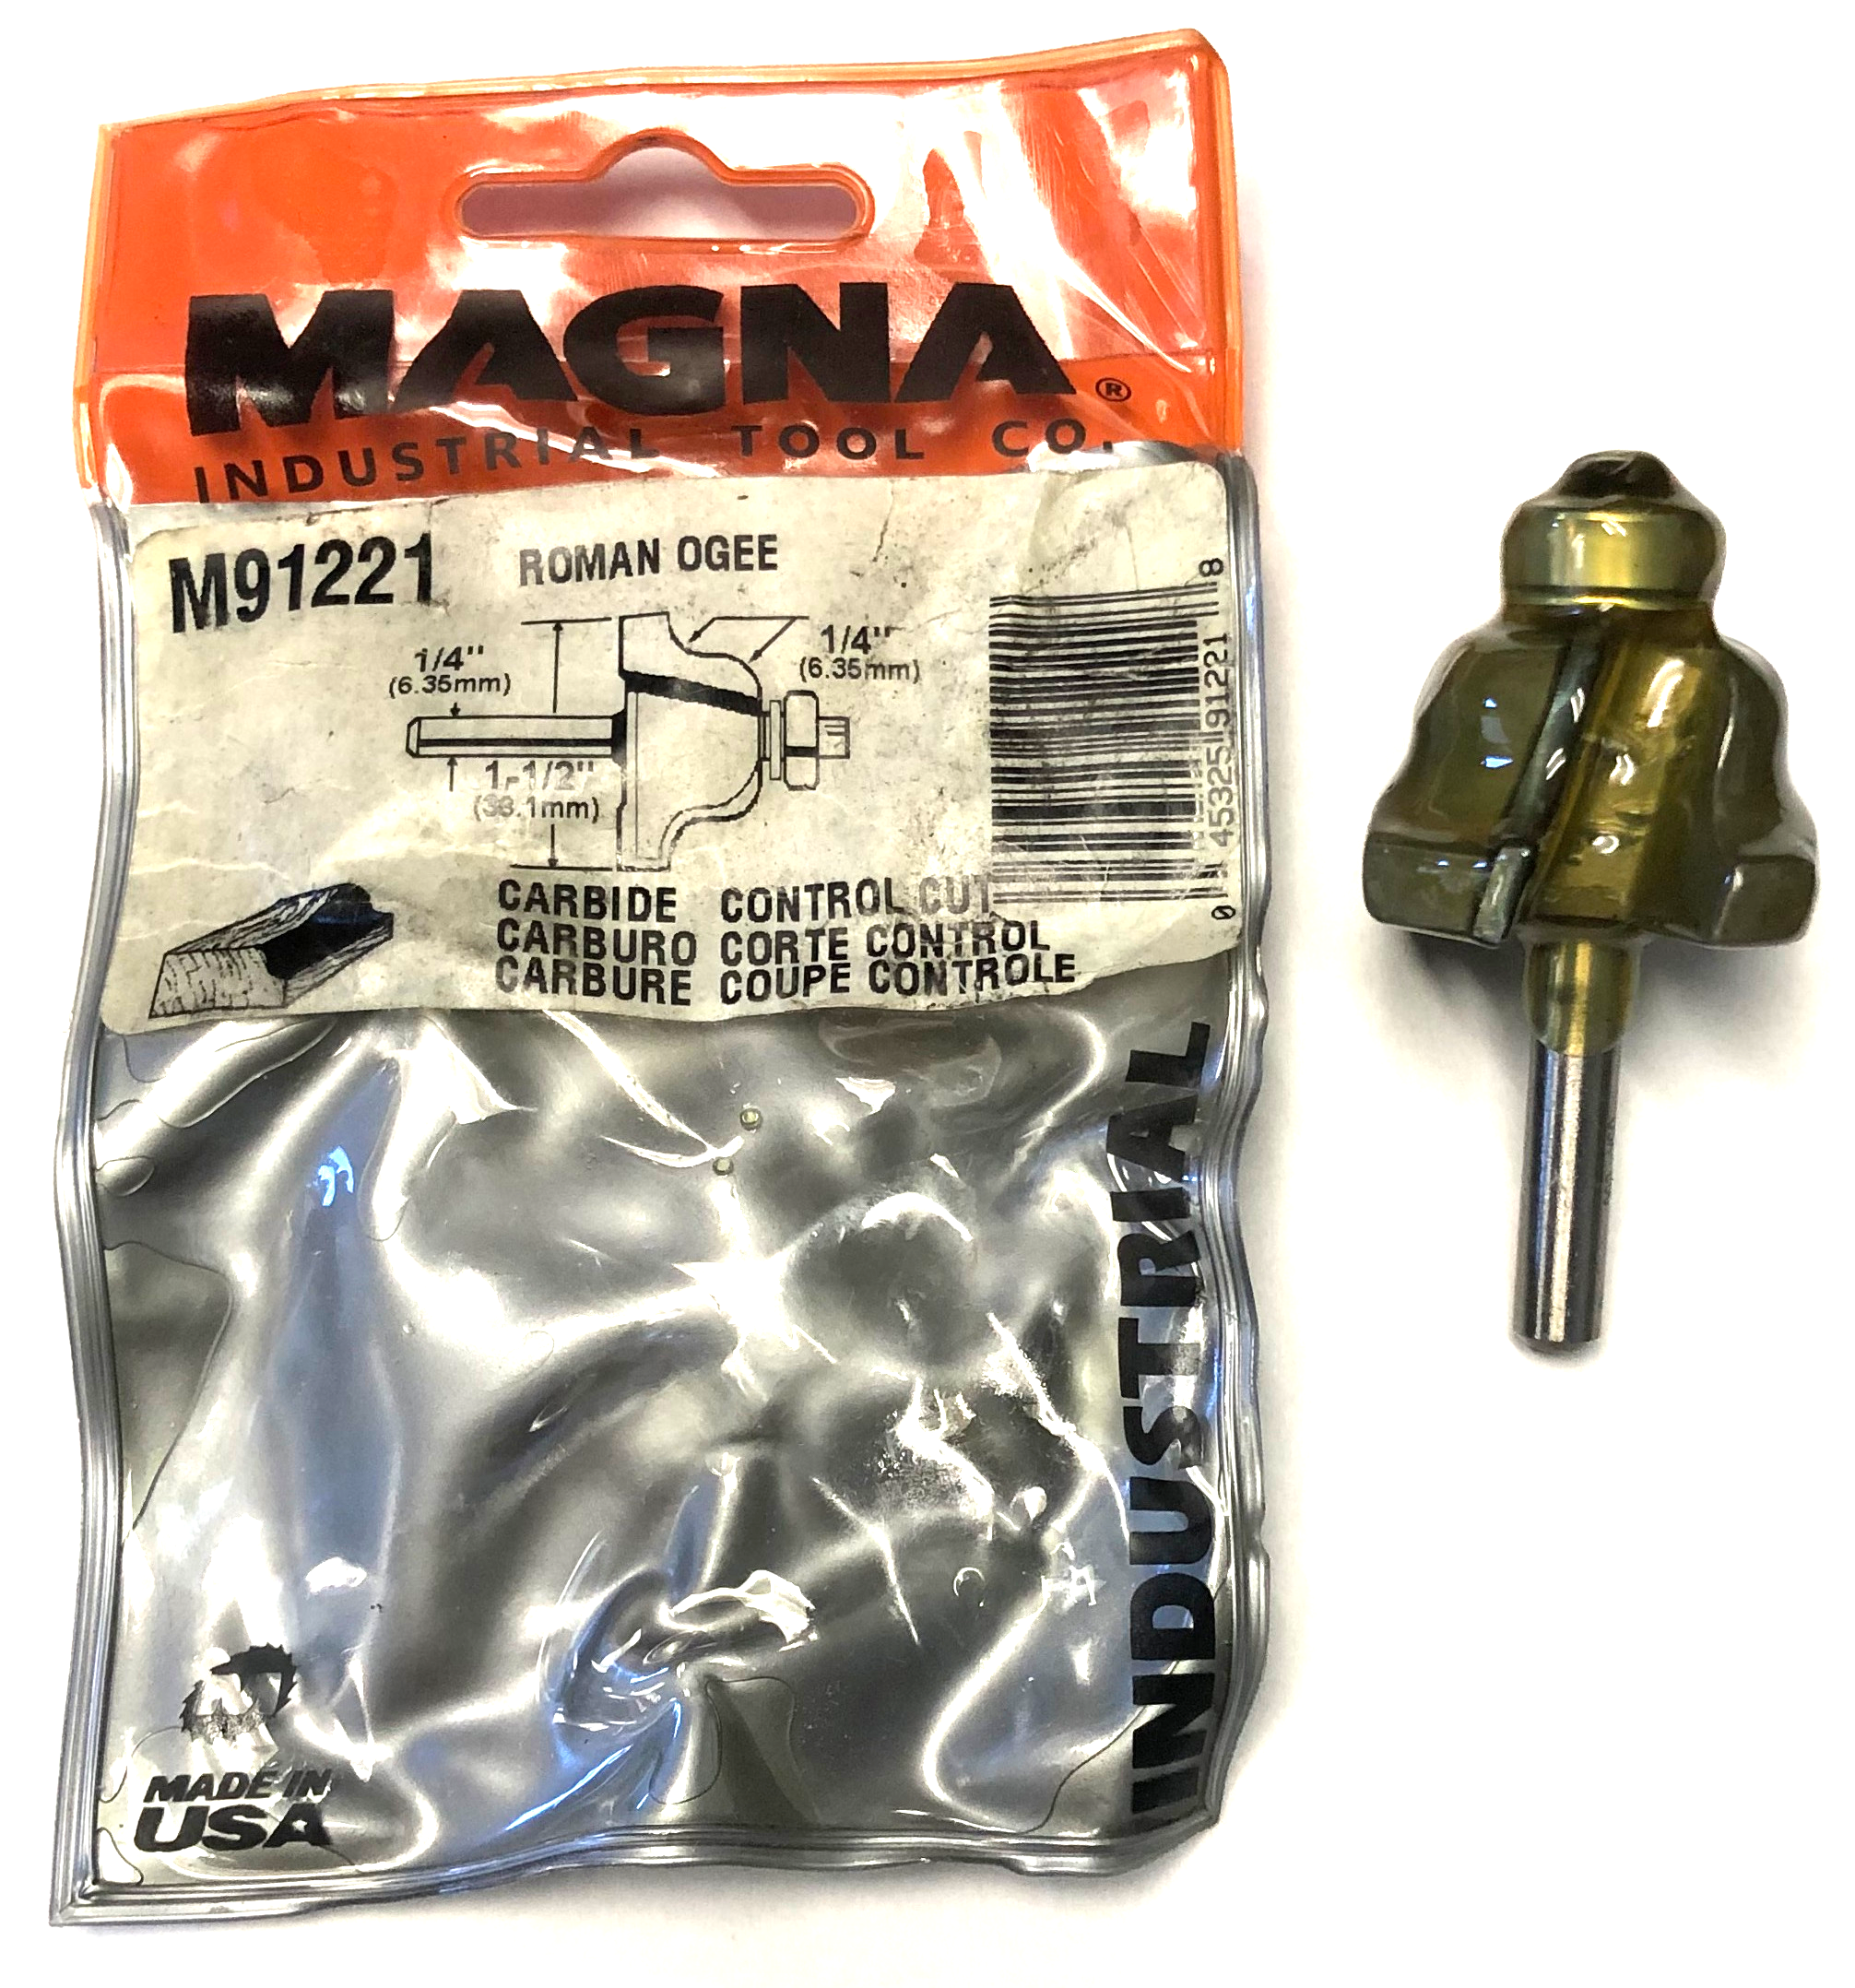 Magna M91221 1/4" x 1-1/2" Roman Ogee Router Bit 1/4" Shank USA